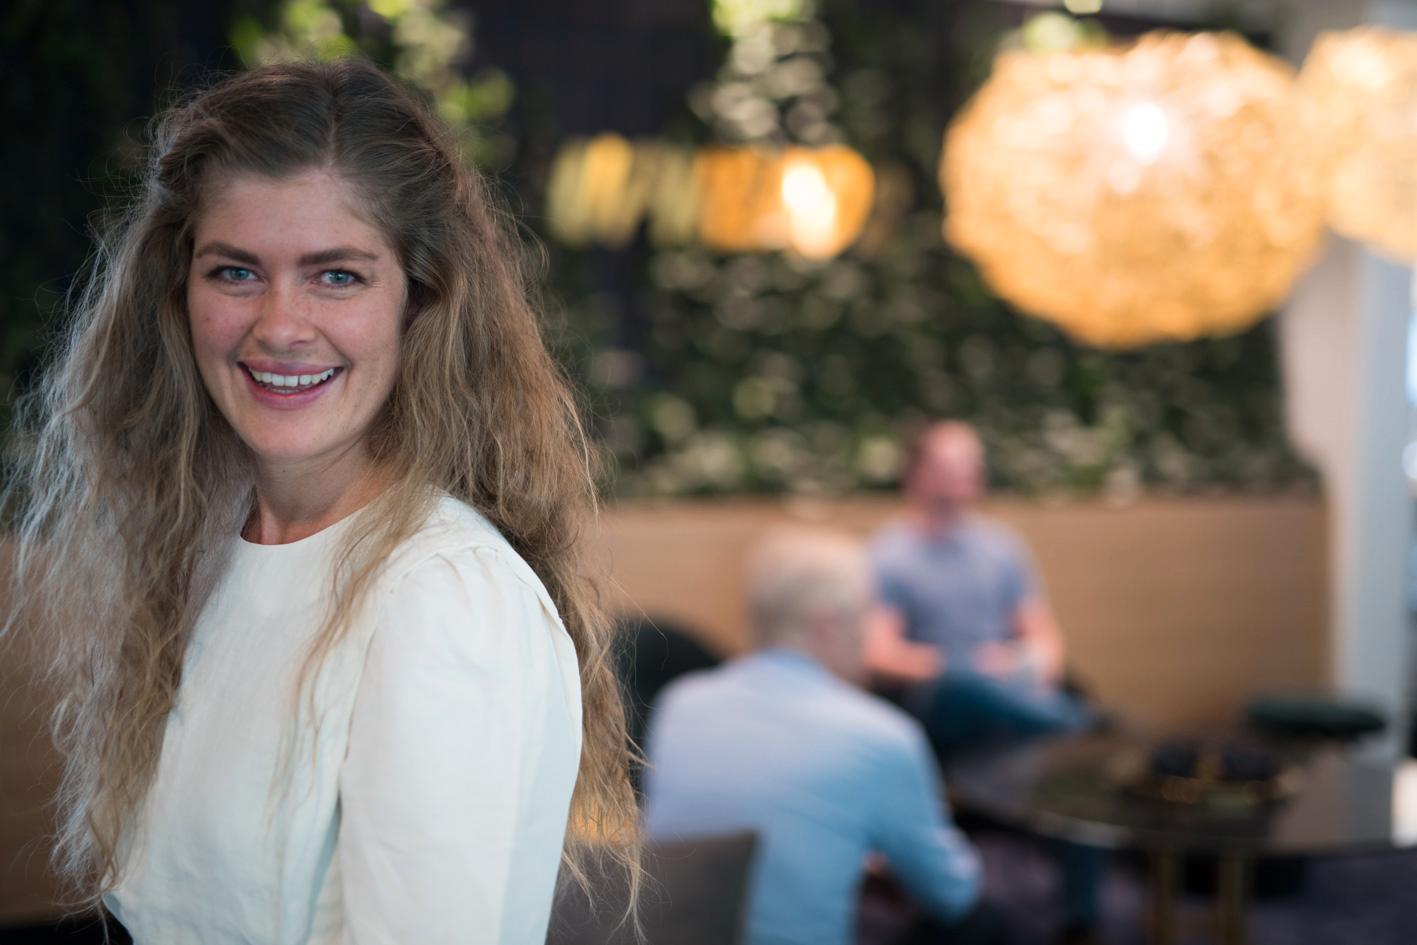 TALENT FOR MARKEDSFØRING: Markedssjef Kristine Grude Nesvik i Upheads kom i fjor på topplisten over årets markedsførere i E24s Ledertalentene.